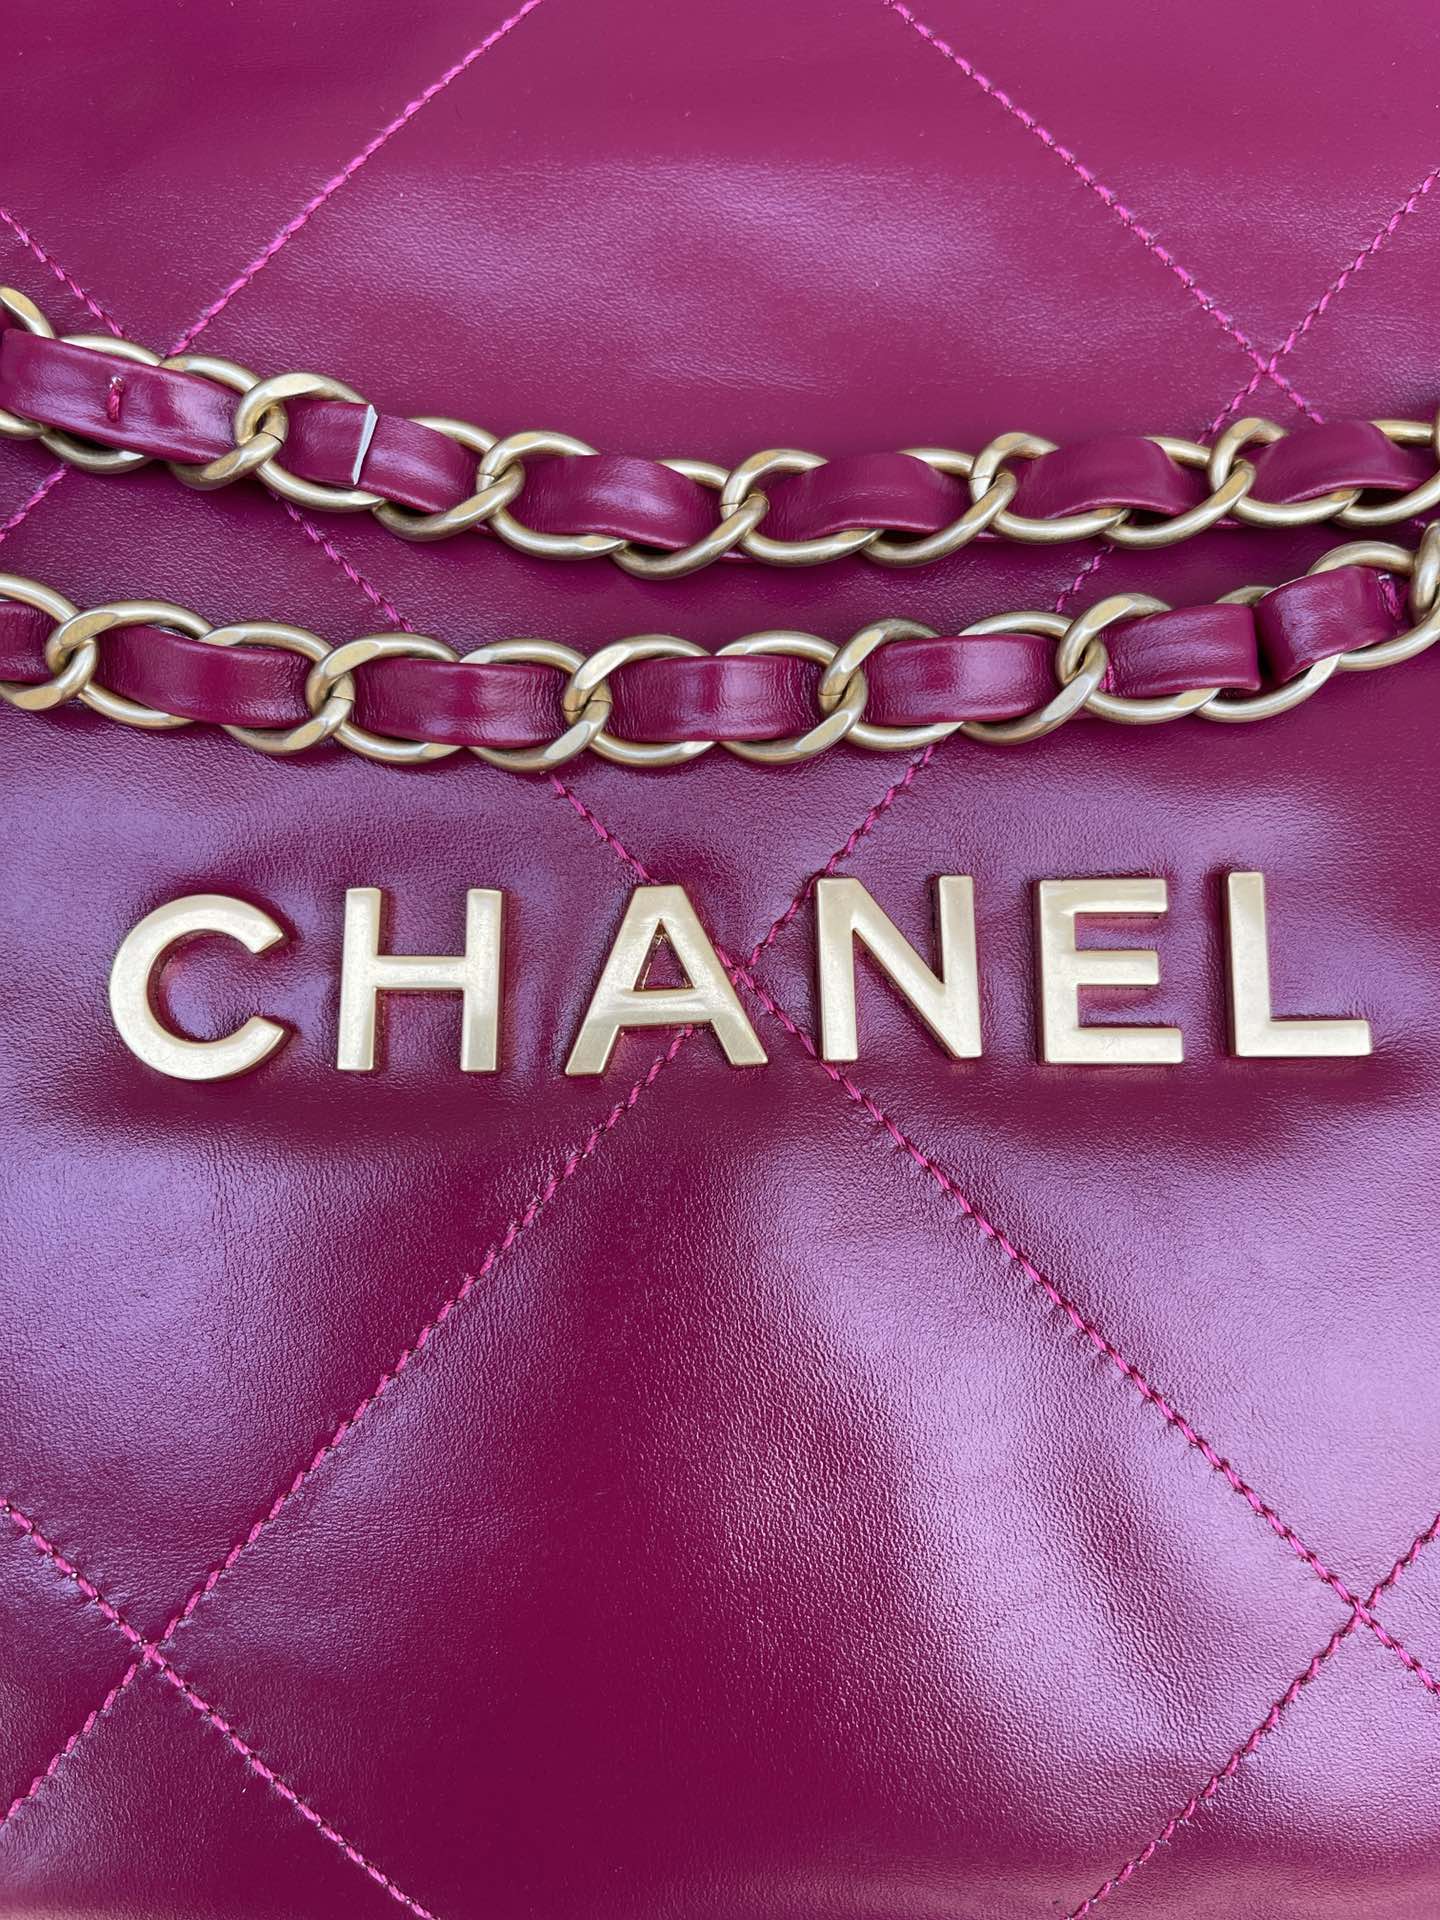 品牌:Chanel型号:AS3260